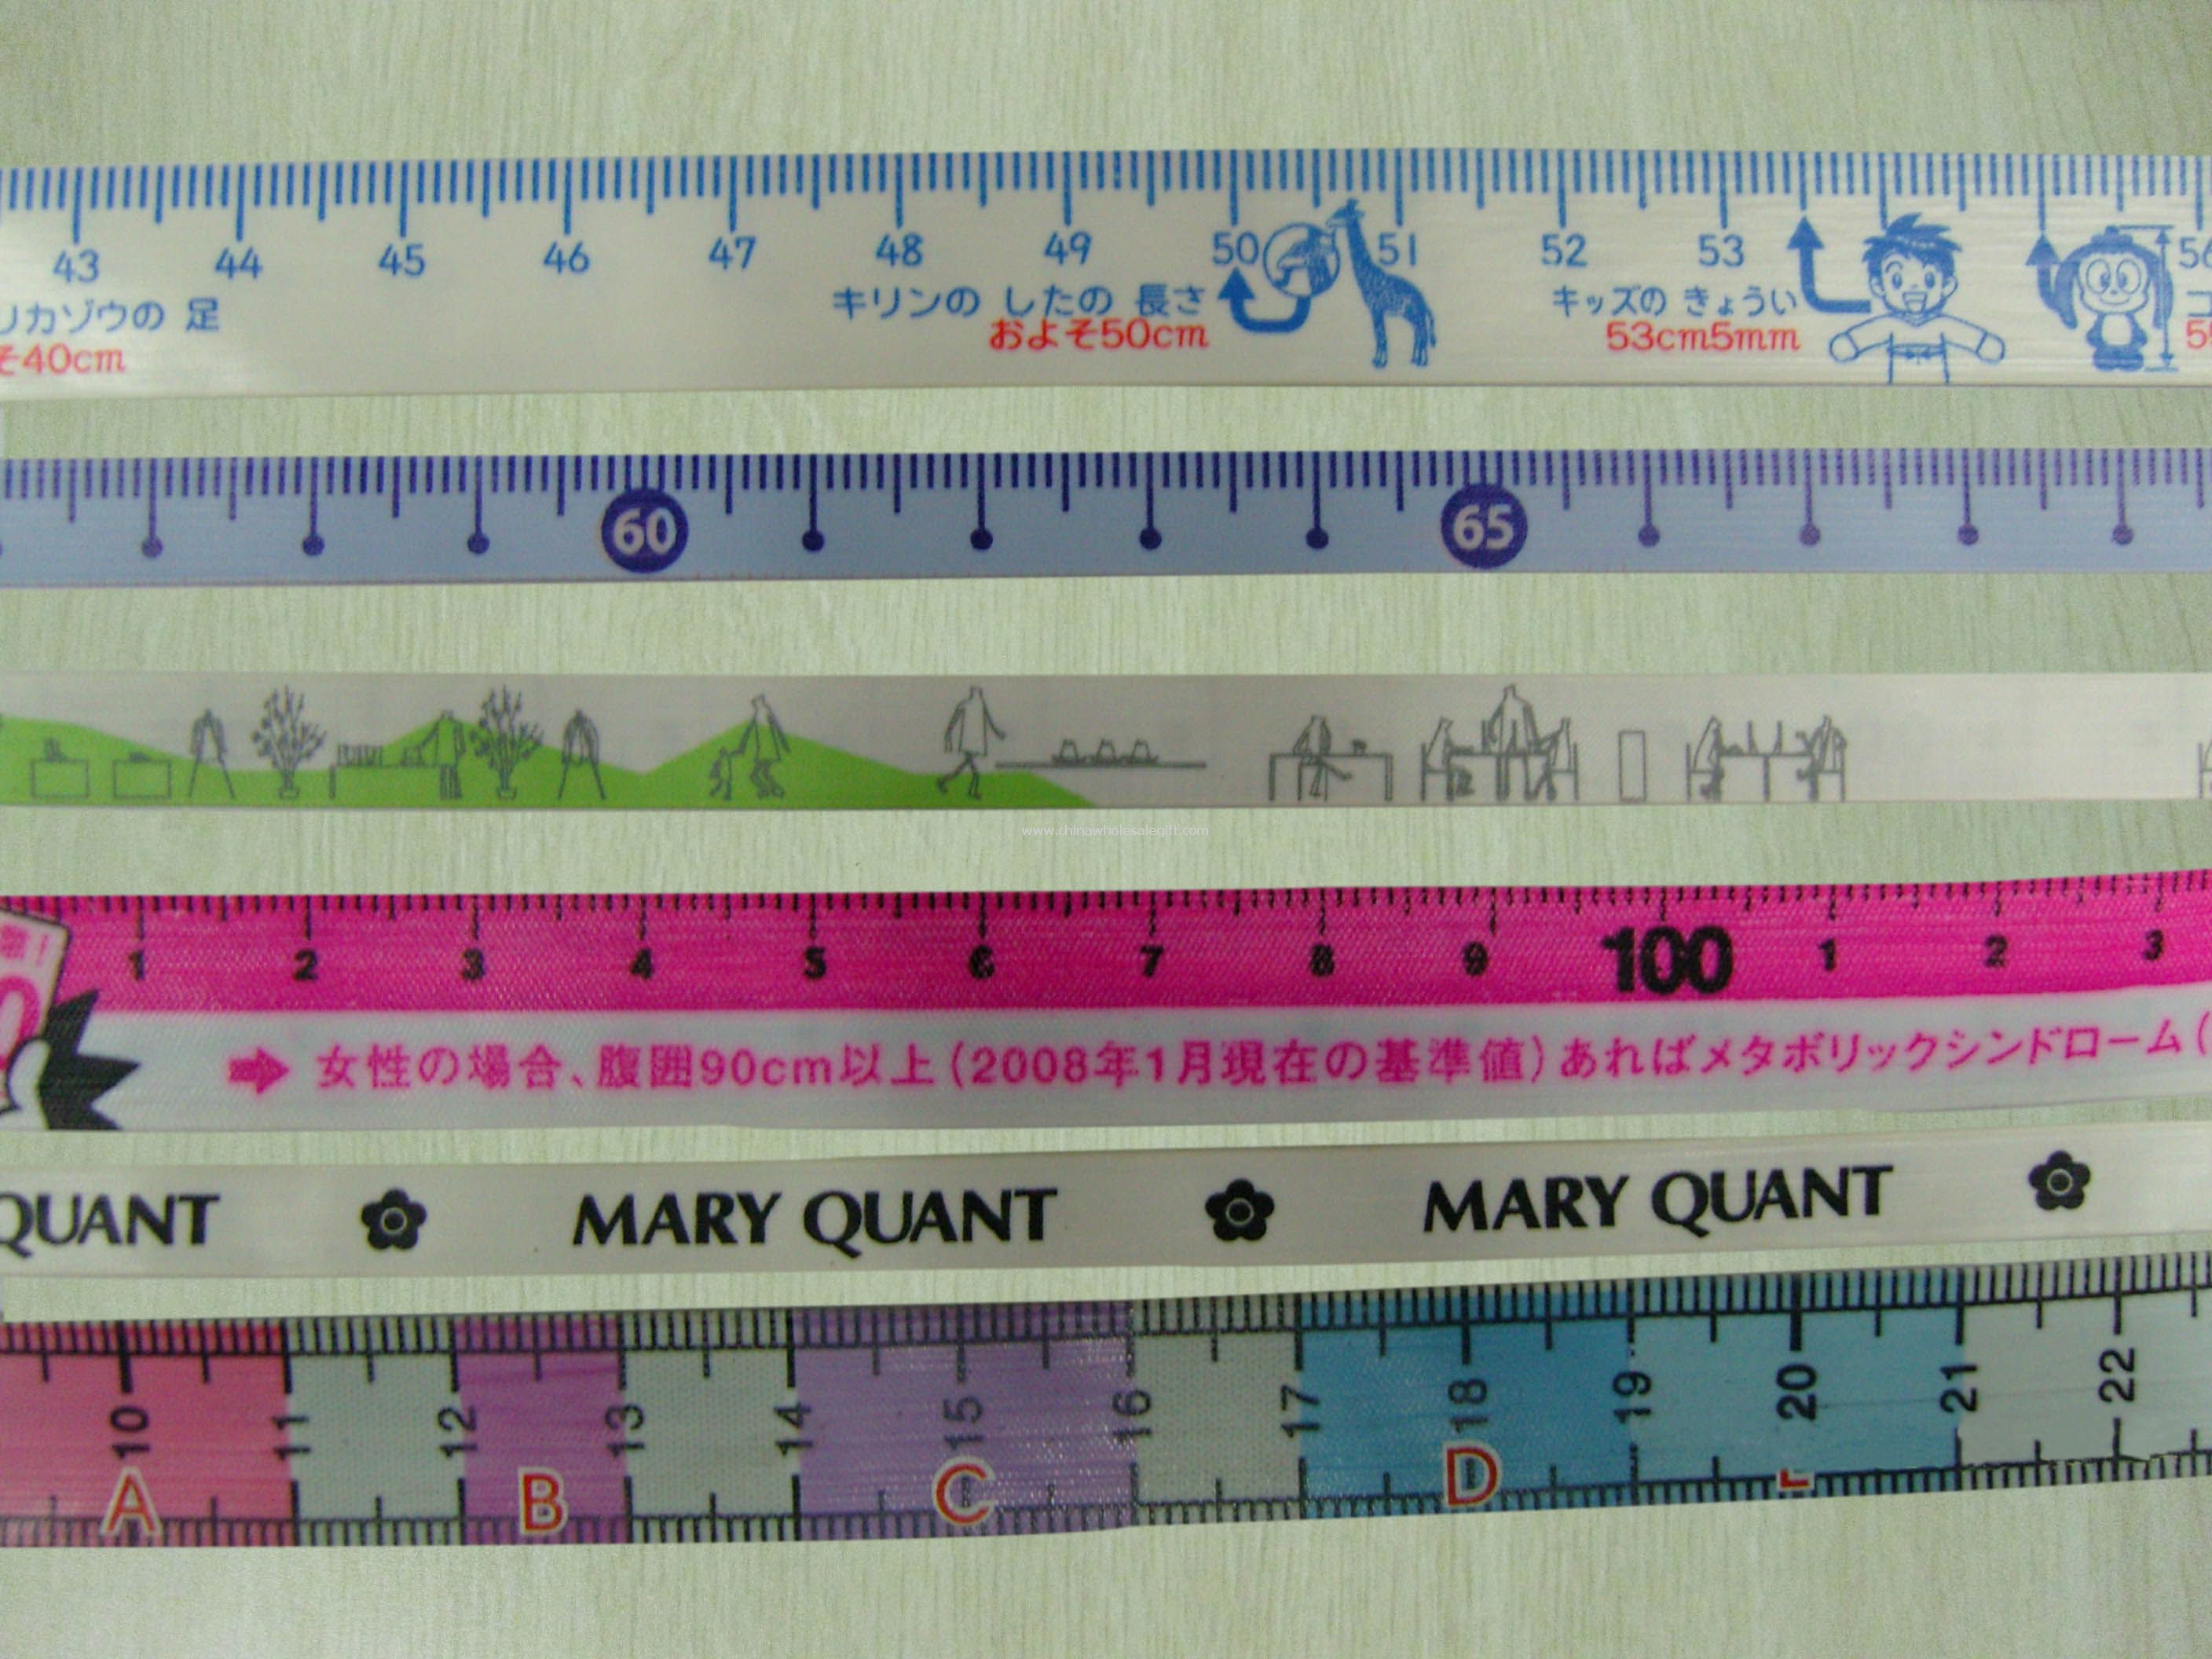 150CM Tailor tape measure